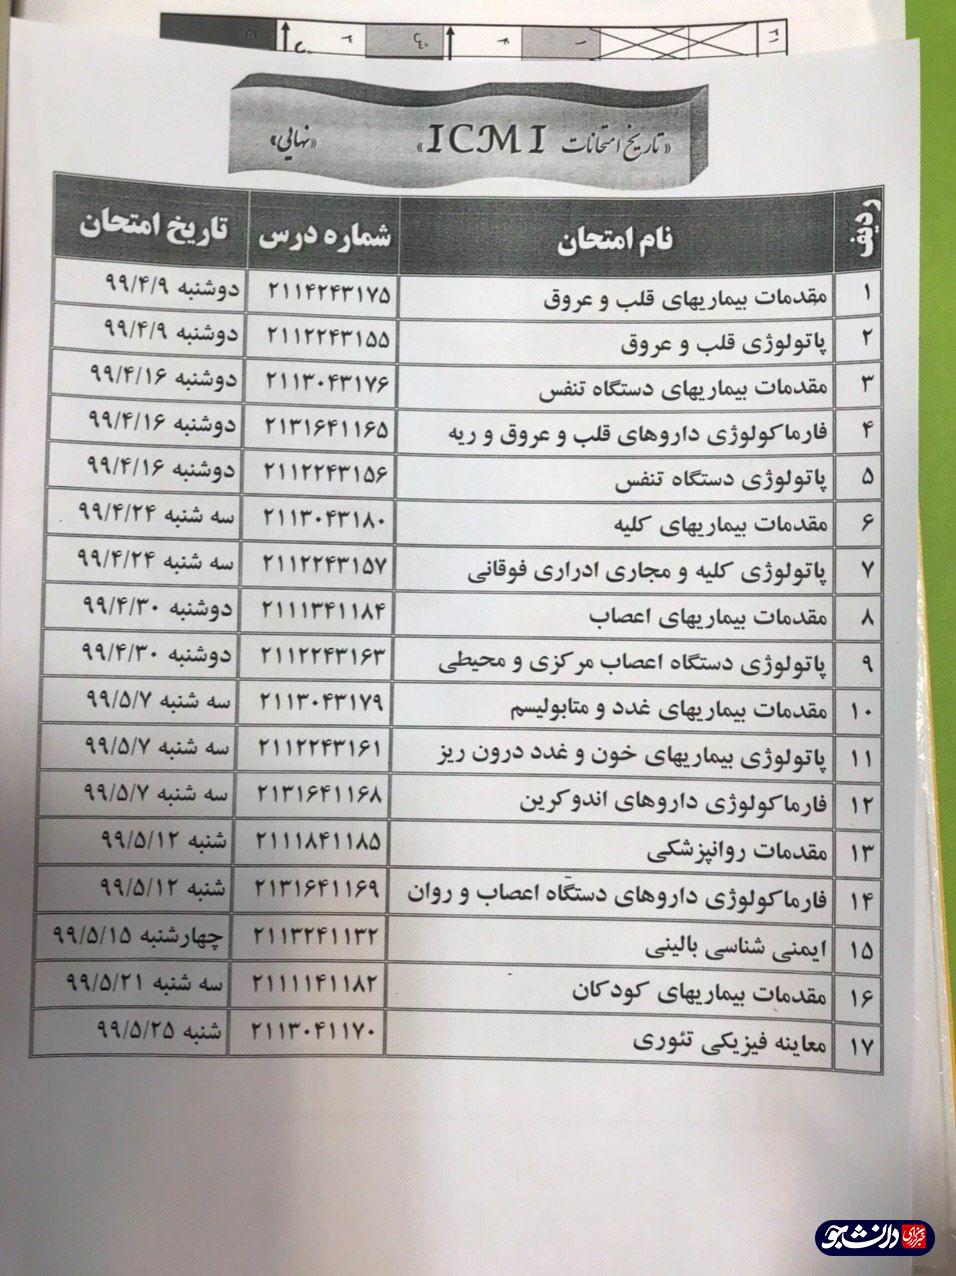 ///// دانشجویان فیزیوپاتولوژی دانشگاه علوم پزشکی اصفهان به صورت گروهی اقدام به حذف ترم کردند